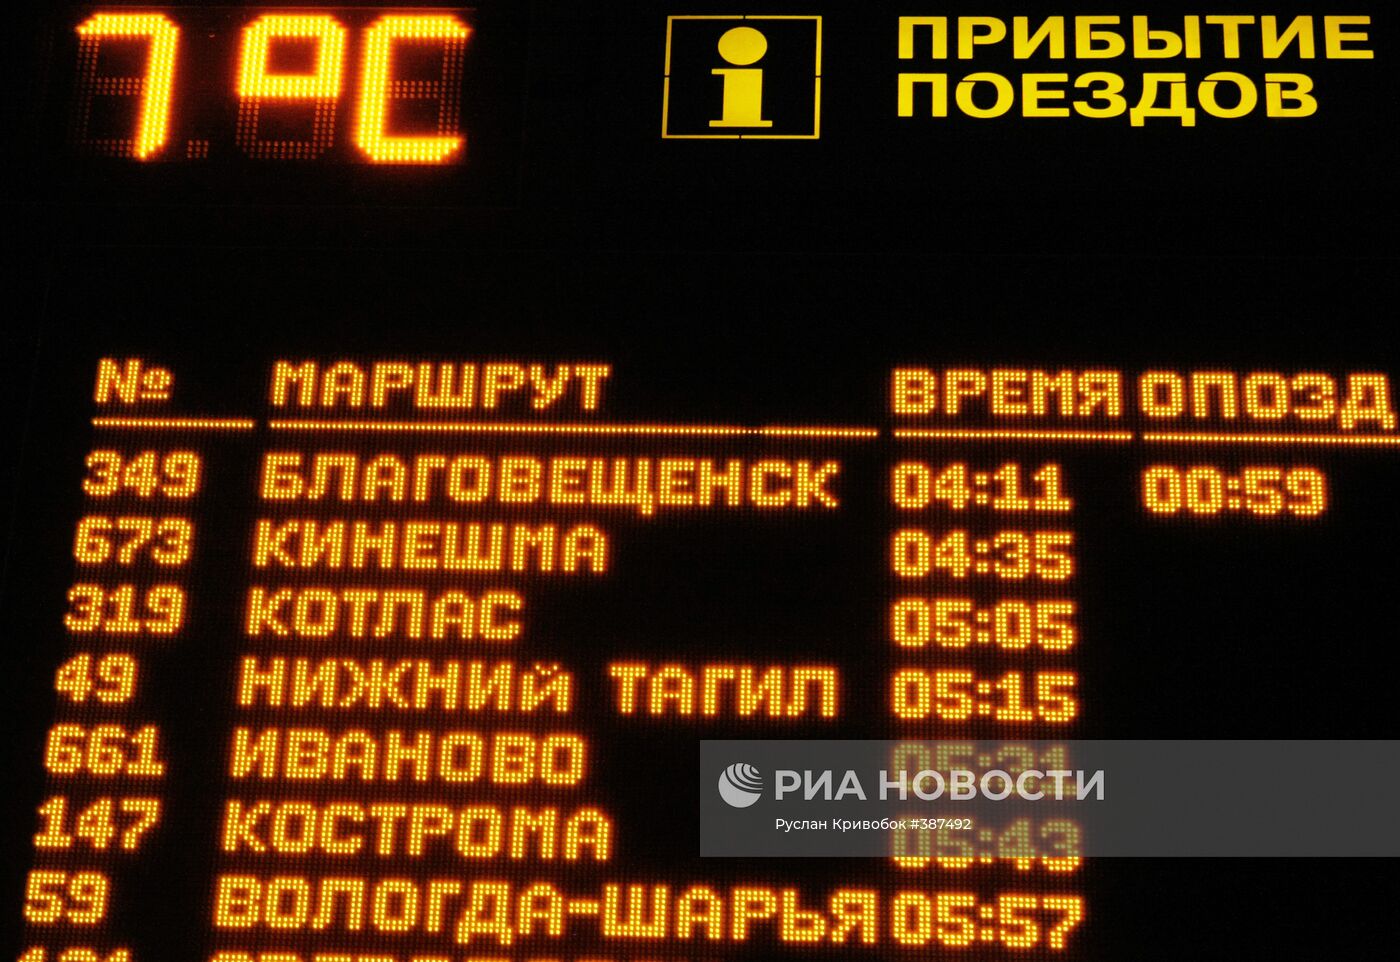 Расписание прибытия поезда "Благовещенск-Москва"